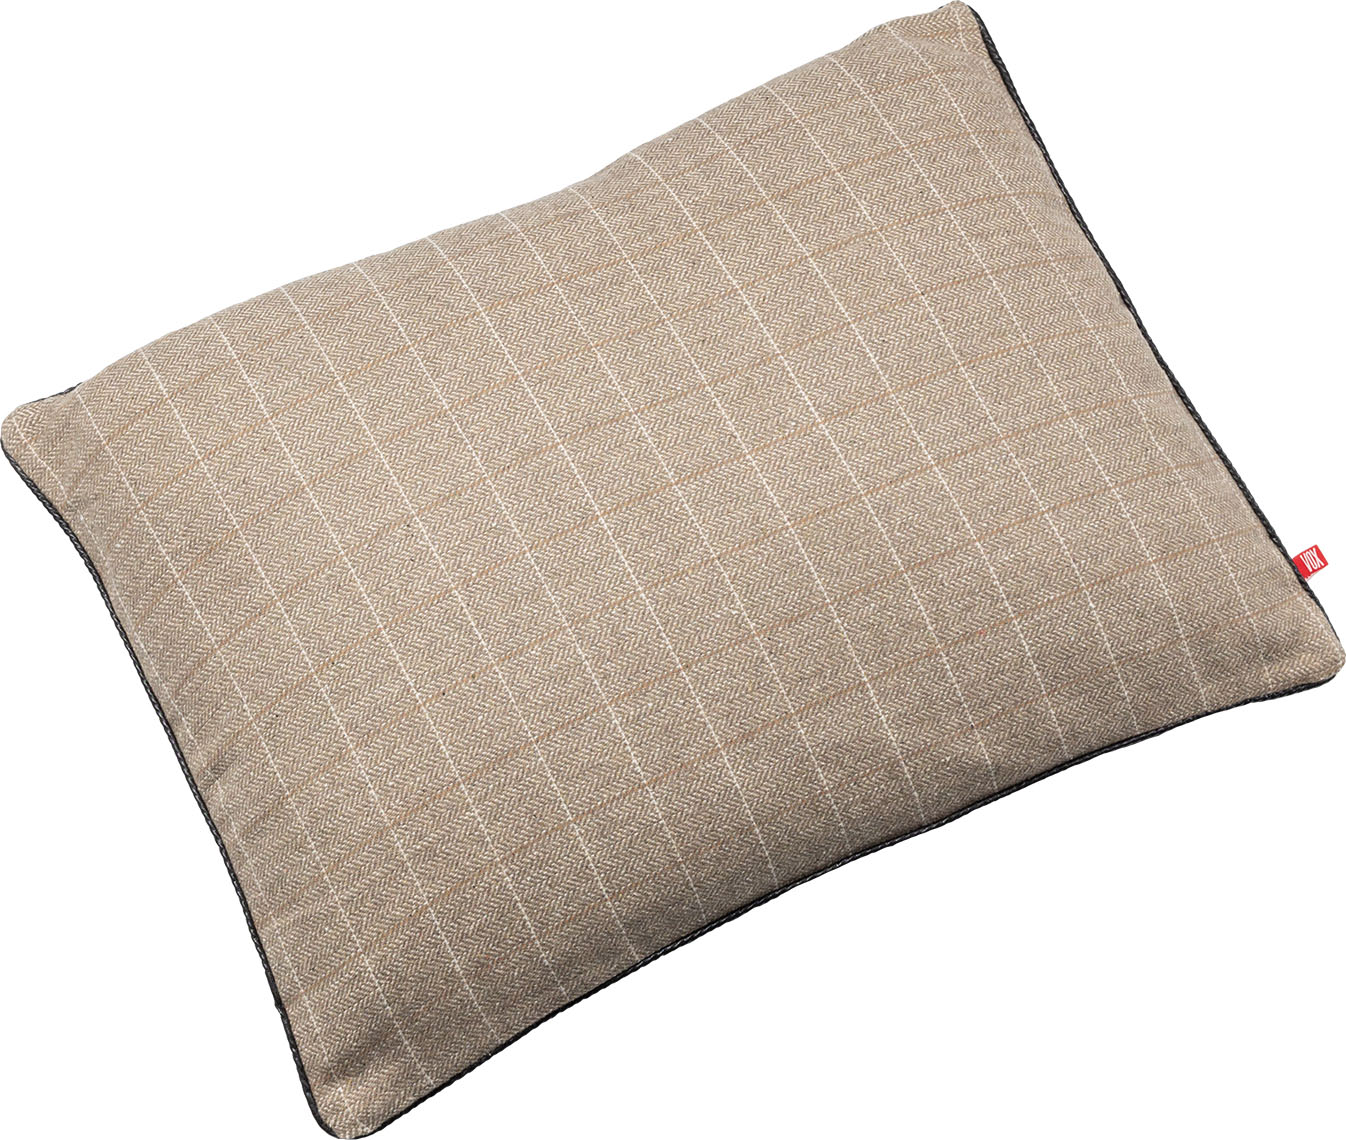 Rectangular pillow Etris